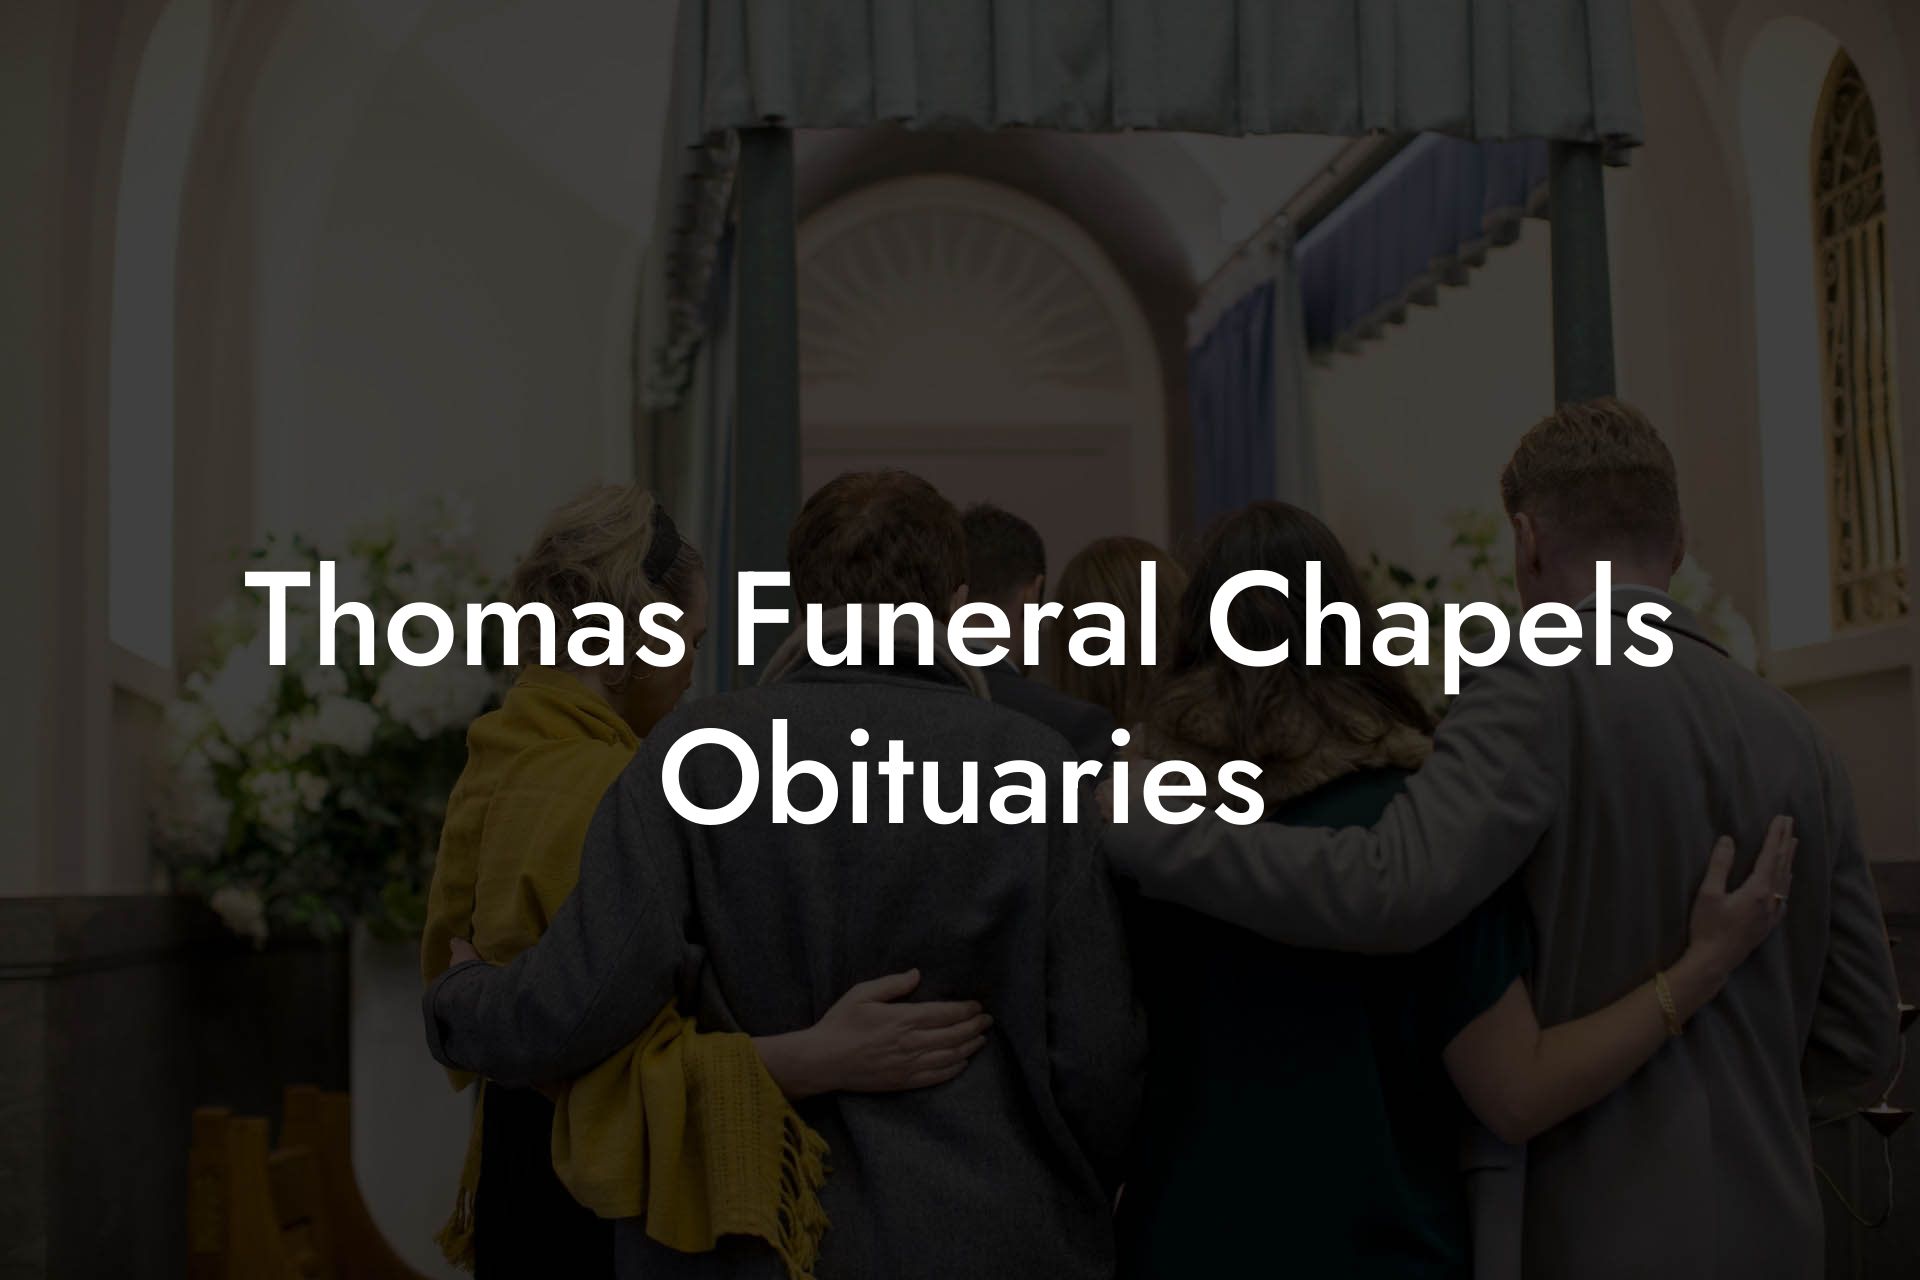 Thomas Funeral Chapels Obituaries